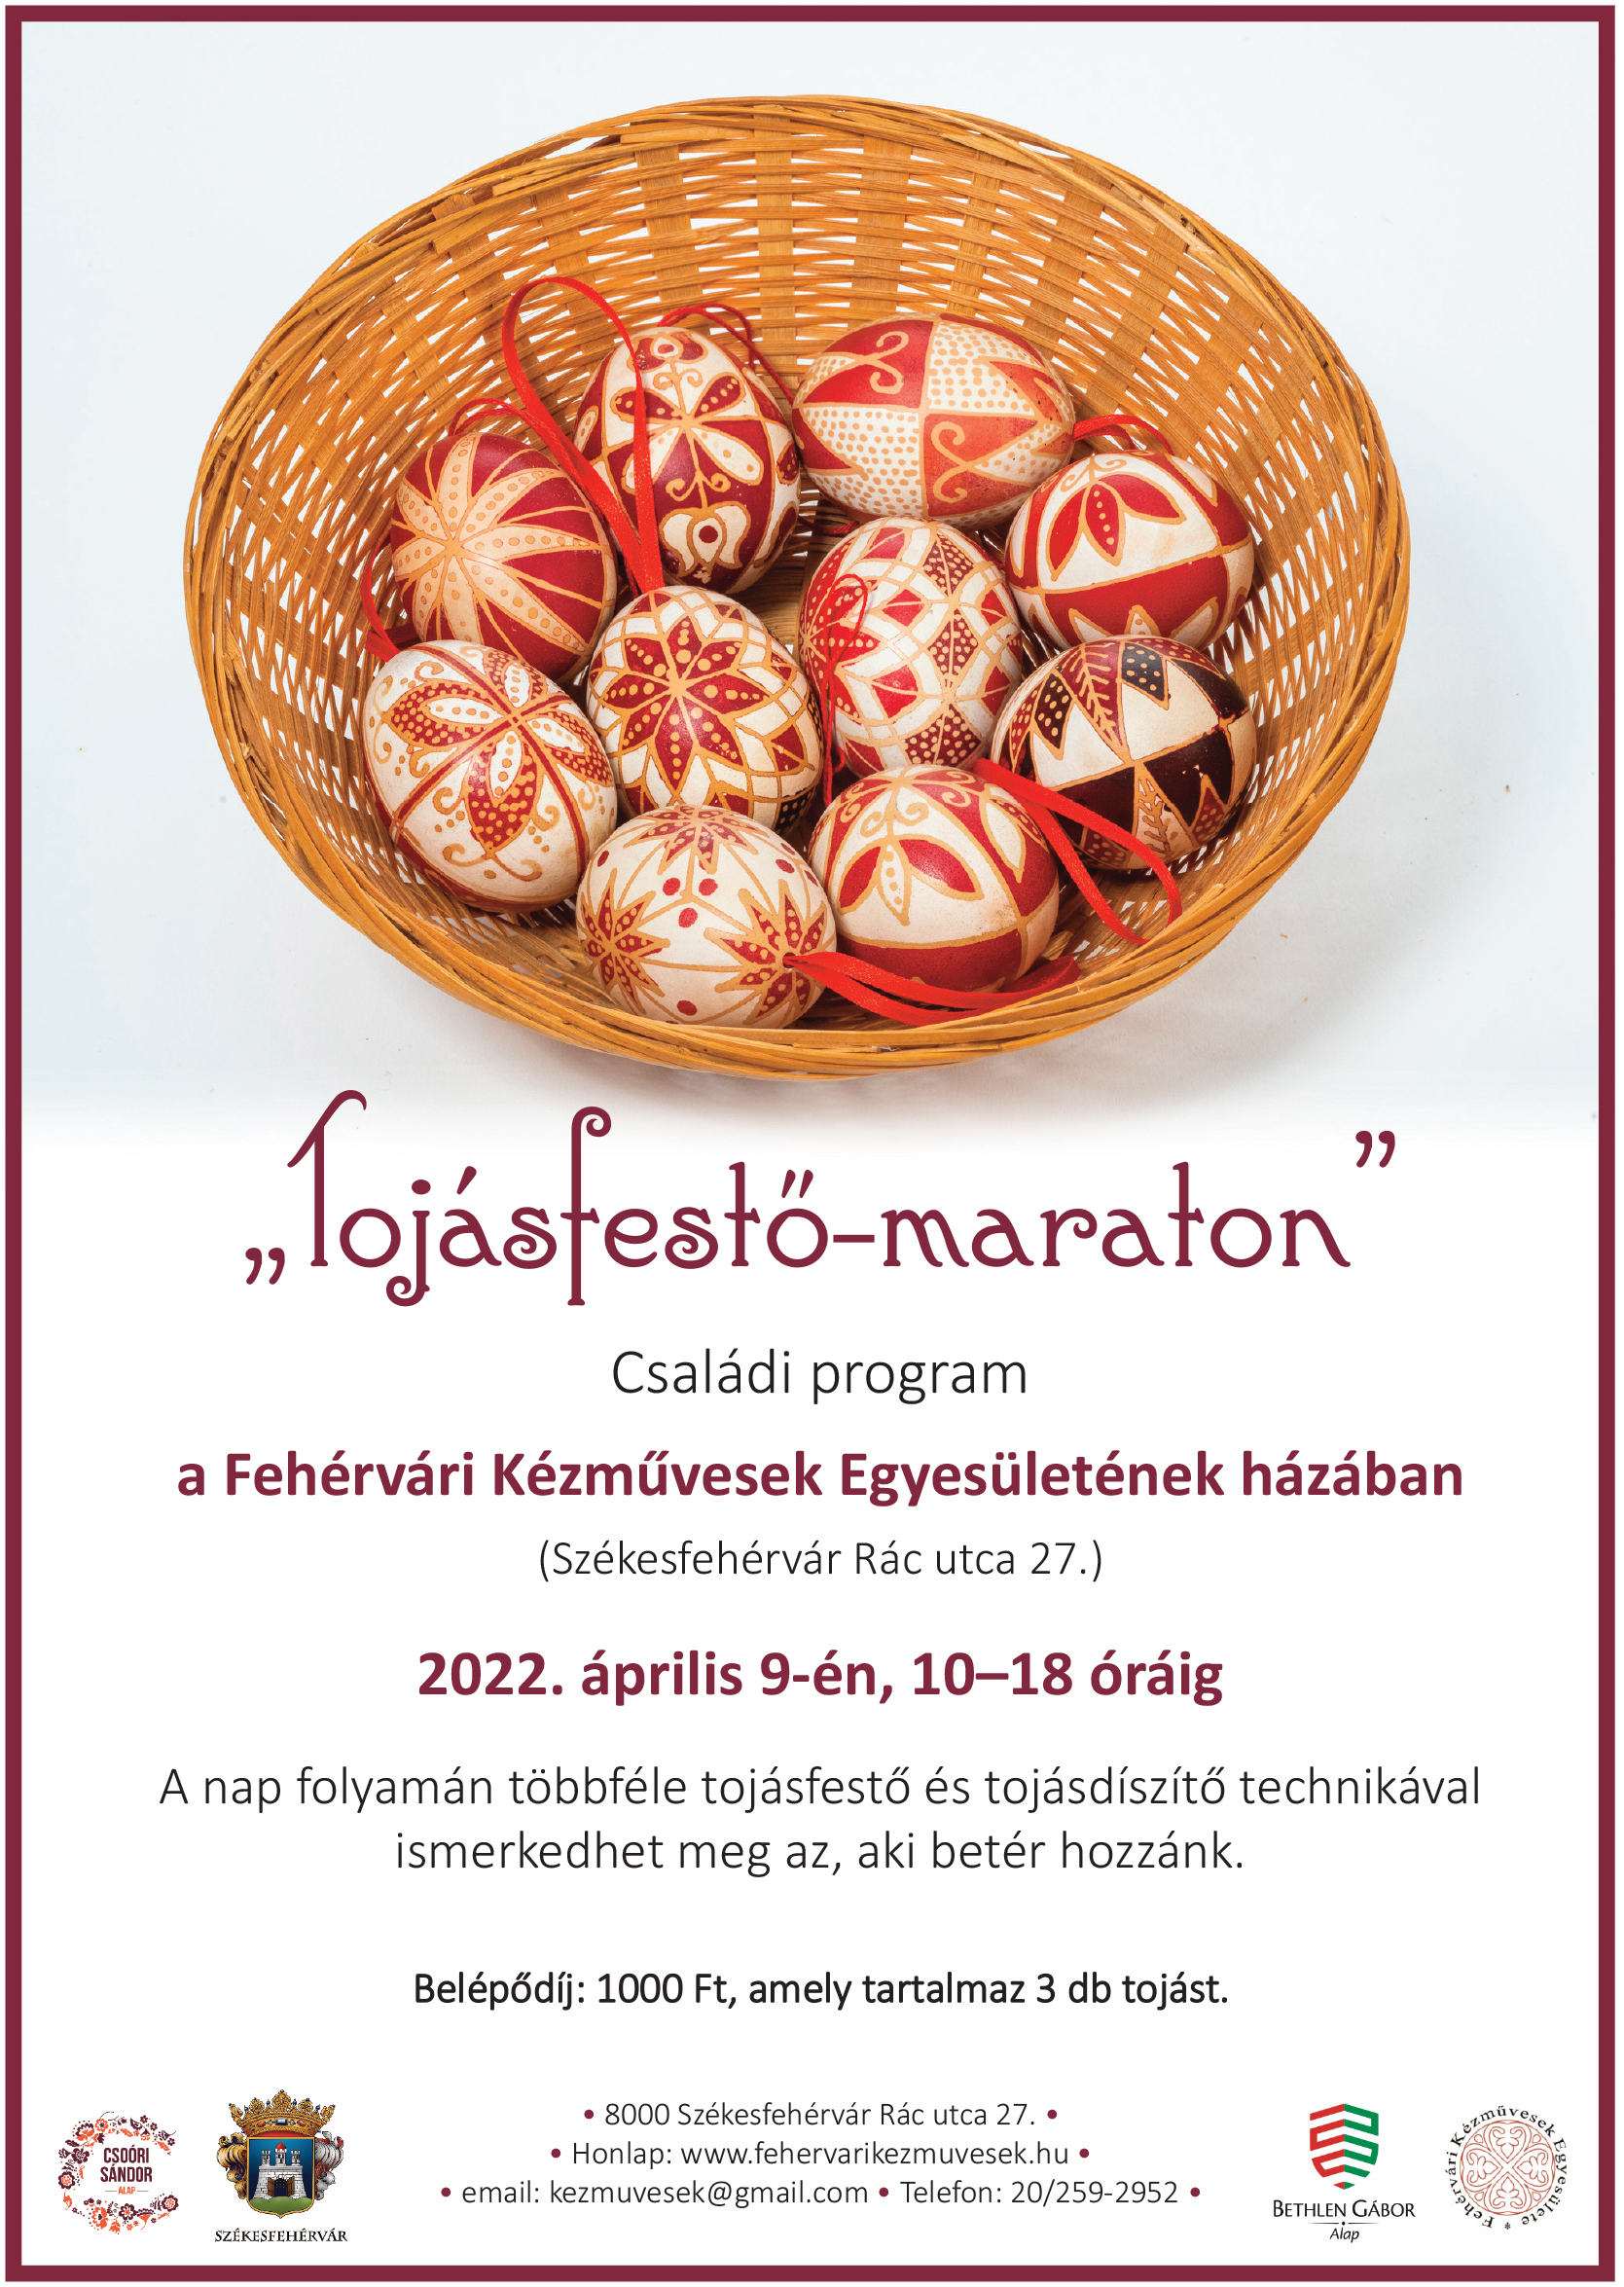 Két év kihagyás után ismét lesz tojásfestő maraton a fehérvári kézművesekkel